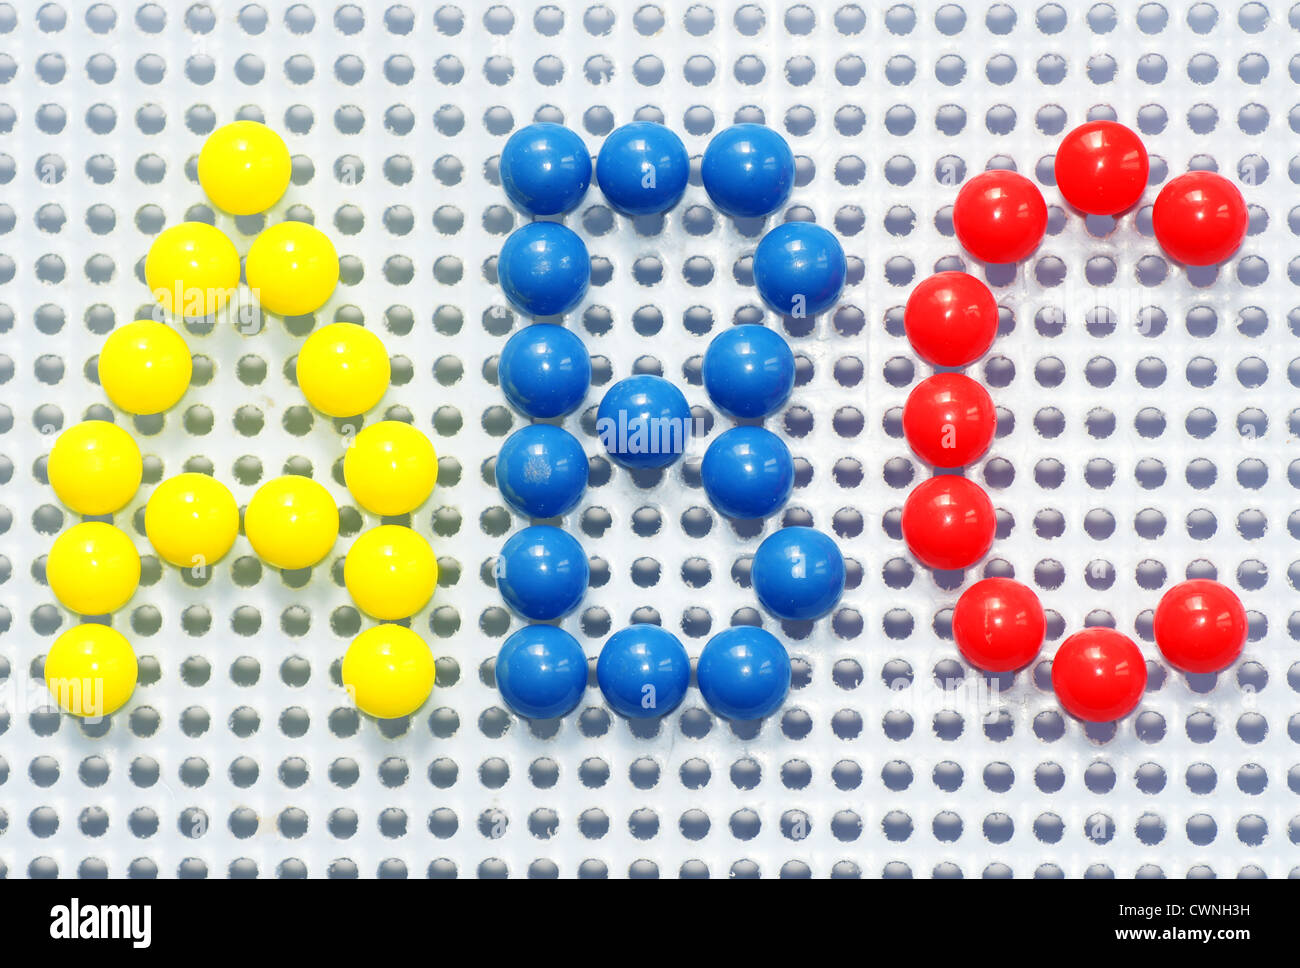 Amusant et coloré de broches de jeu enfant utilisé pour écrire A,B,C en bleu lumineux, jaune et rouge. Banque D'Images